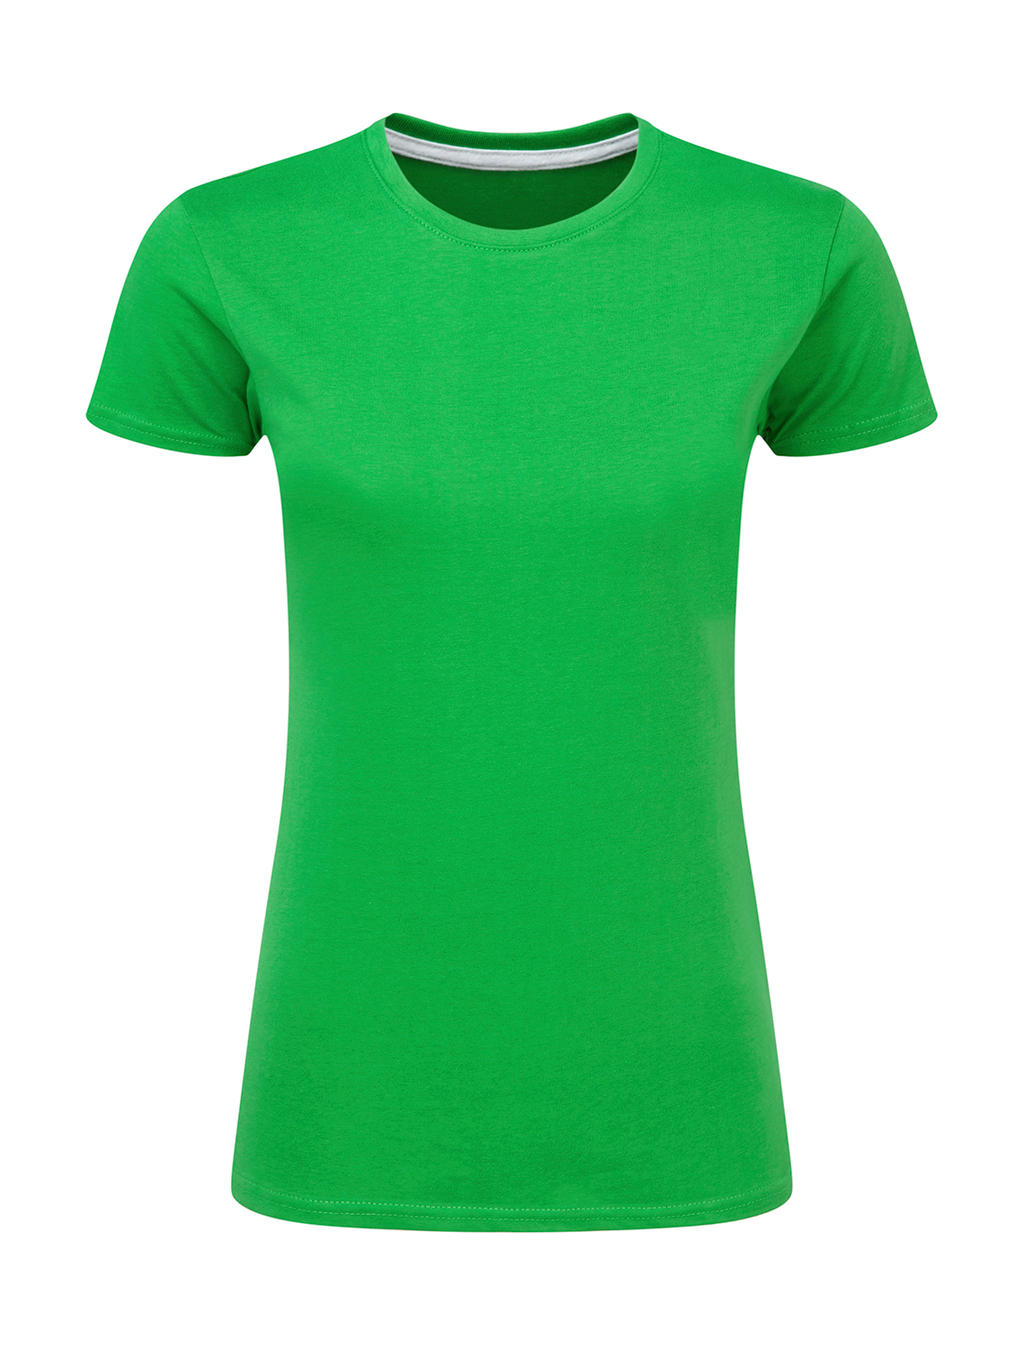 Dokonale potlačiteľné dámske tričko bez štítku - kelly green